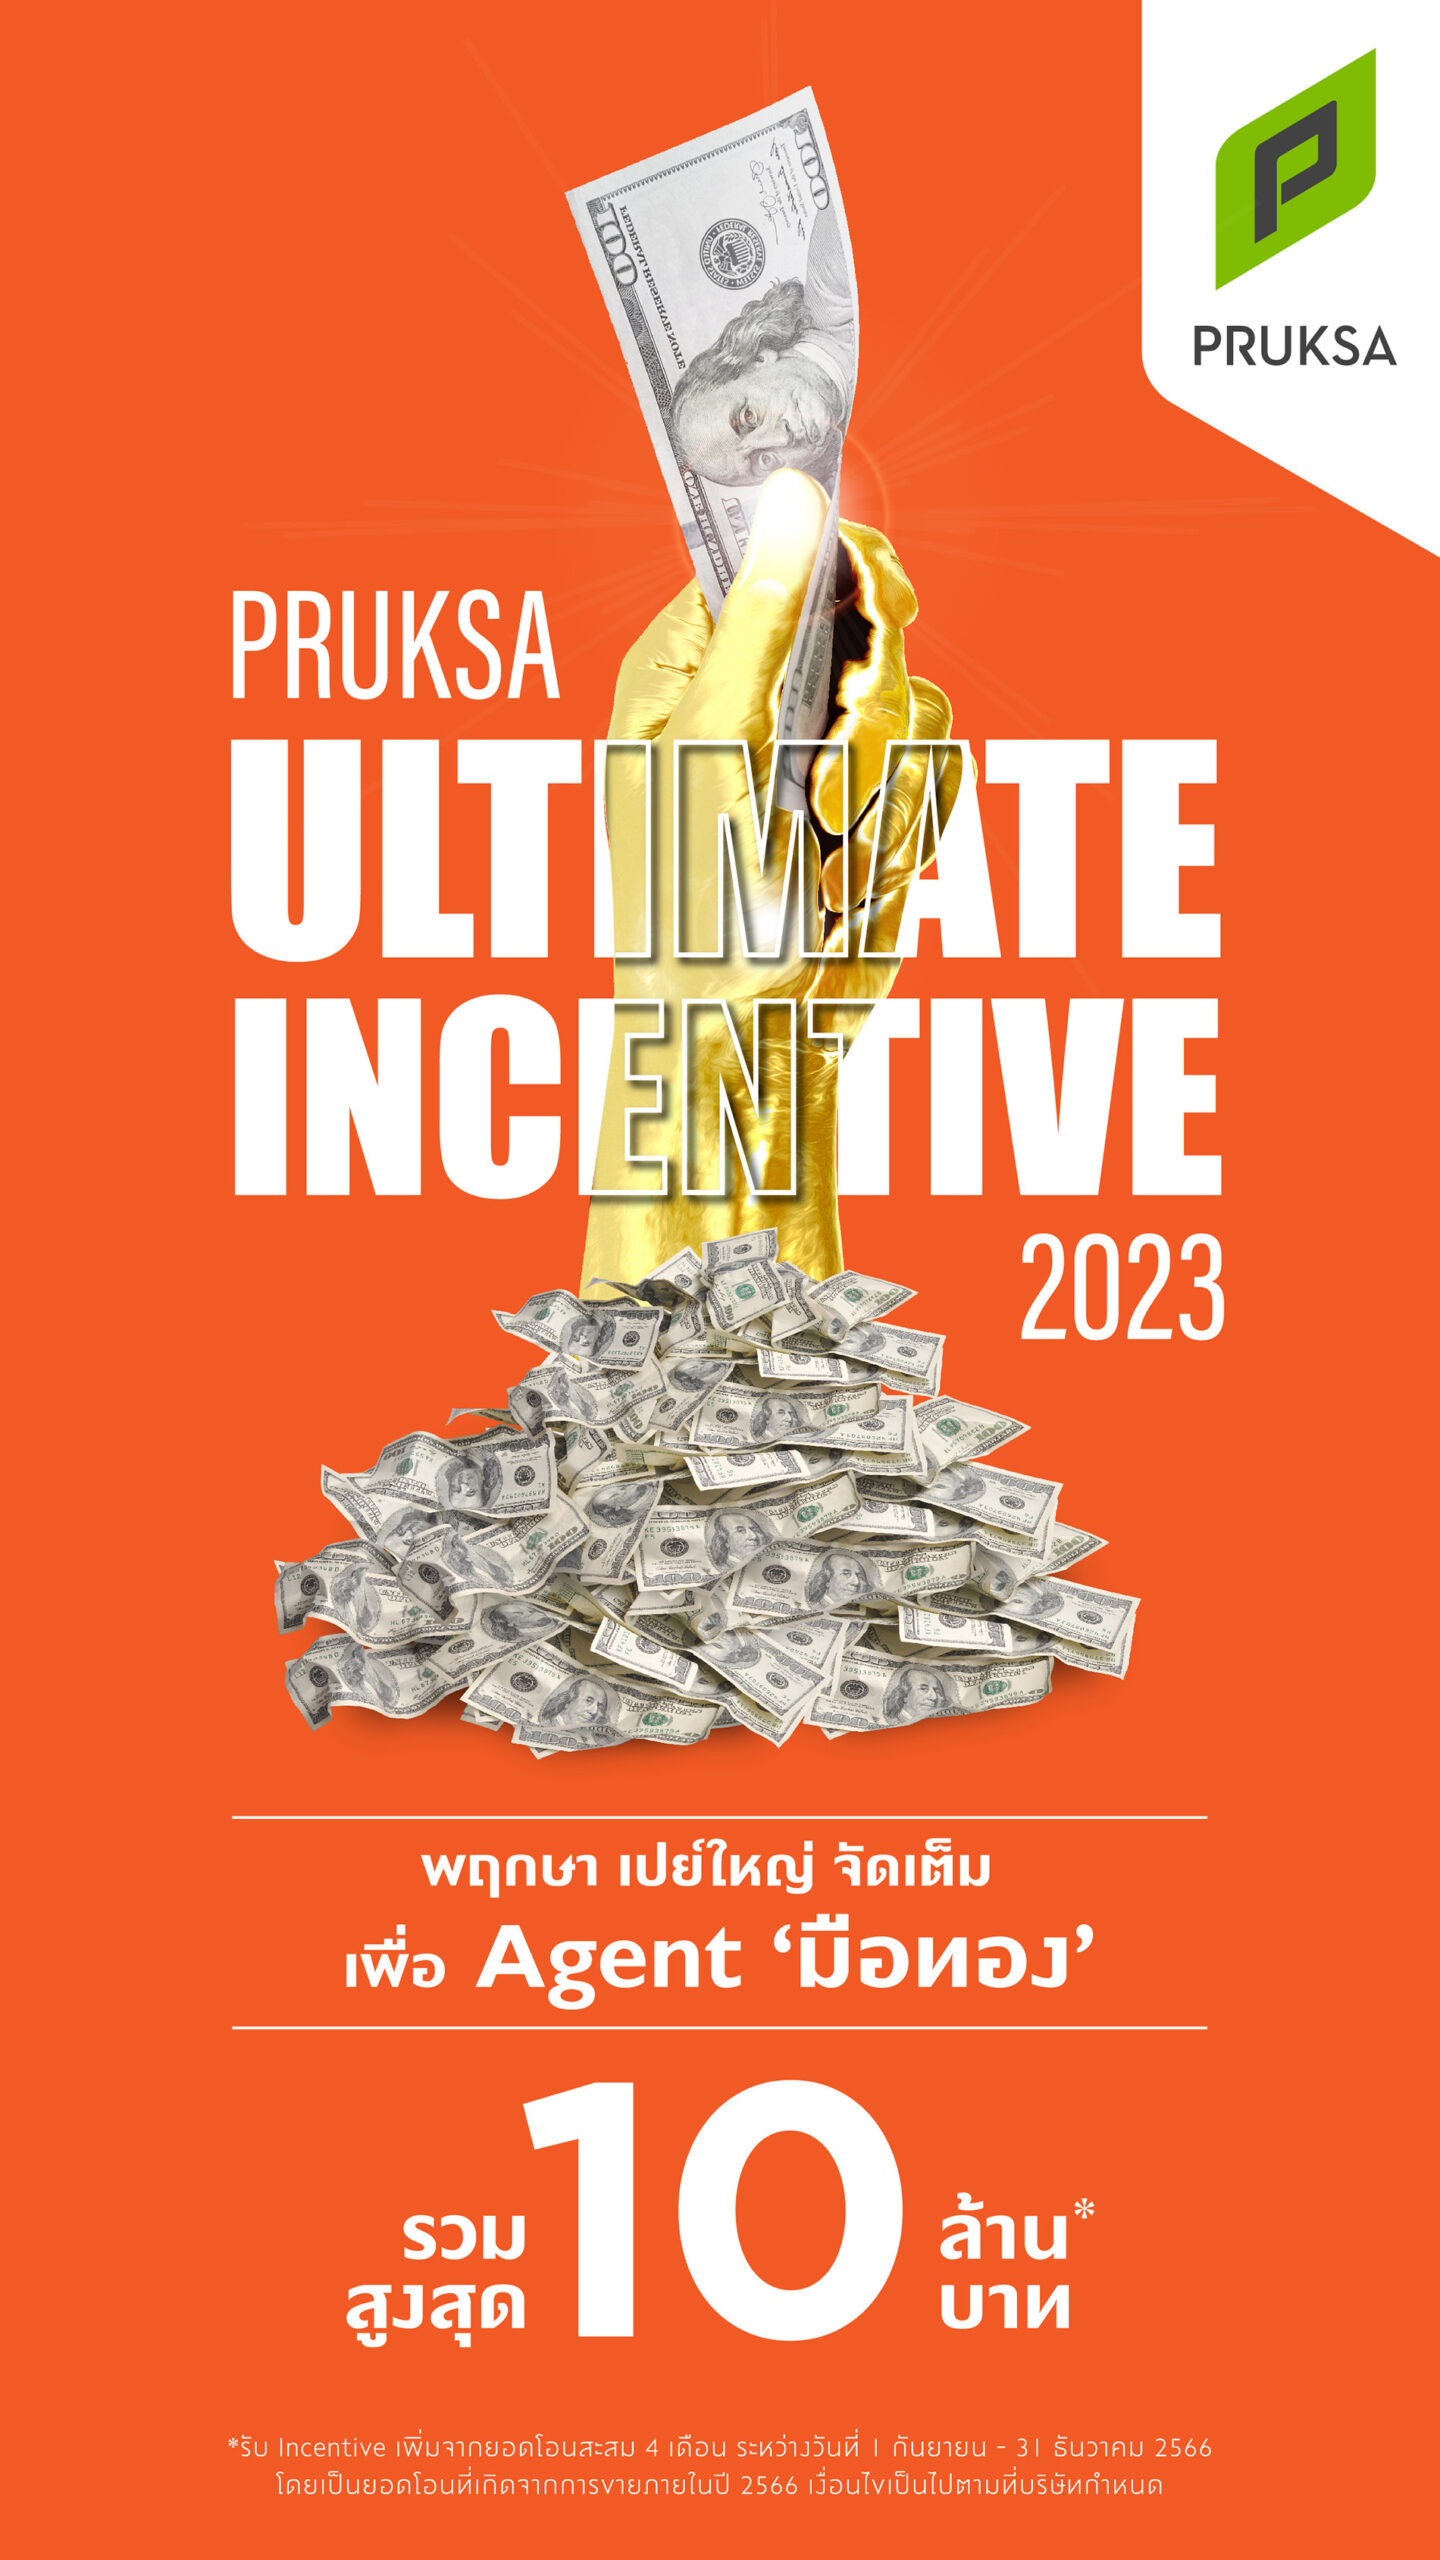 ‘พฤกษา’ ลุยเจาะลูกค้าต่างชาติ อัดฉีดแคมเปญ Pruksa Ultimate Incentive เพิ่มแรงจูงใจให้เอเจนต์ 